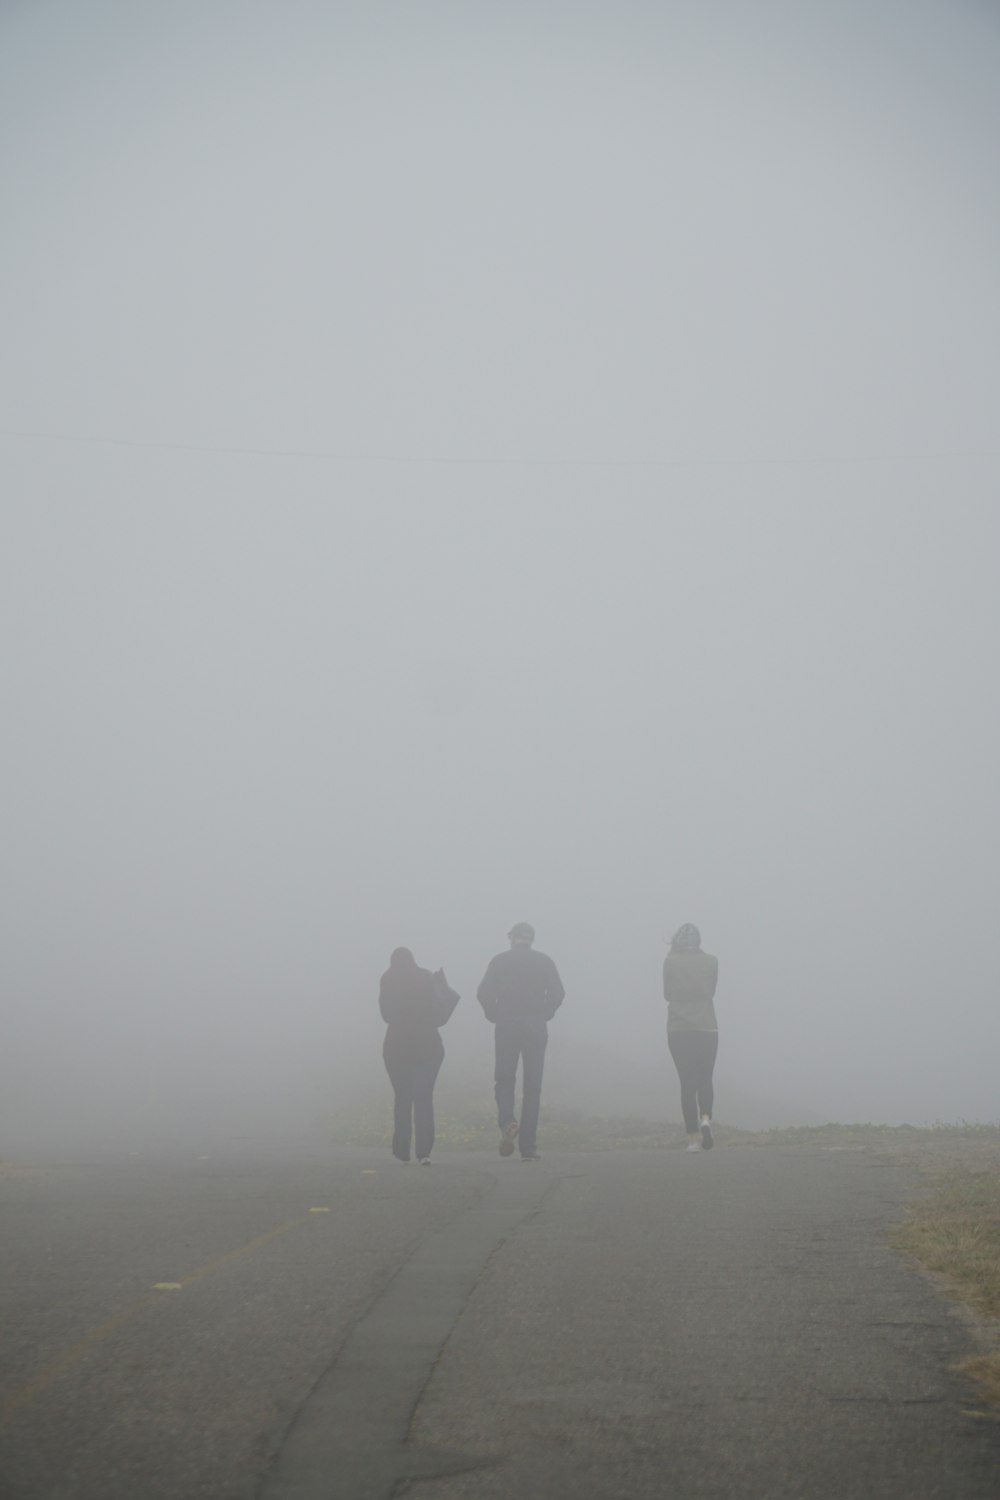 three people walking on dirt trail